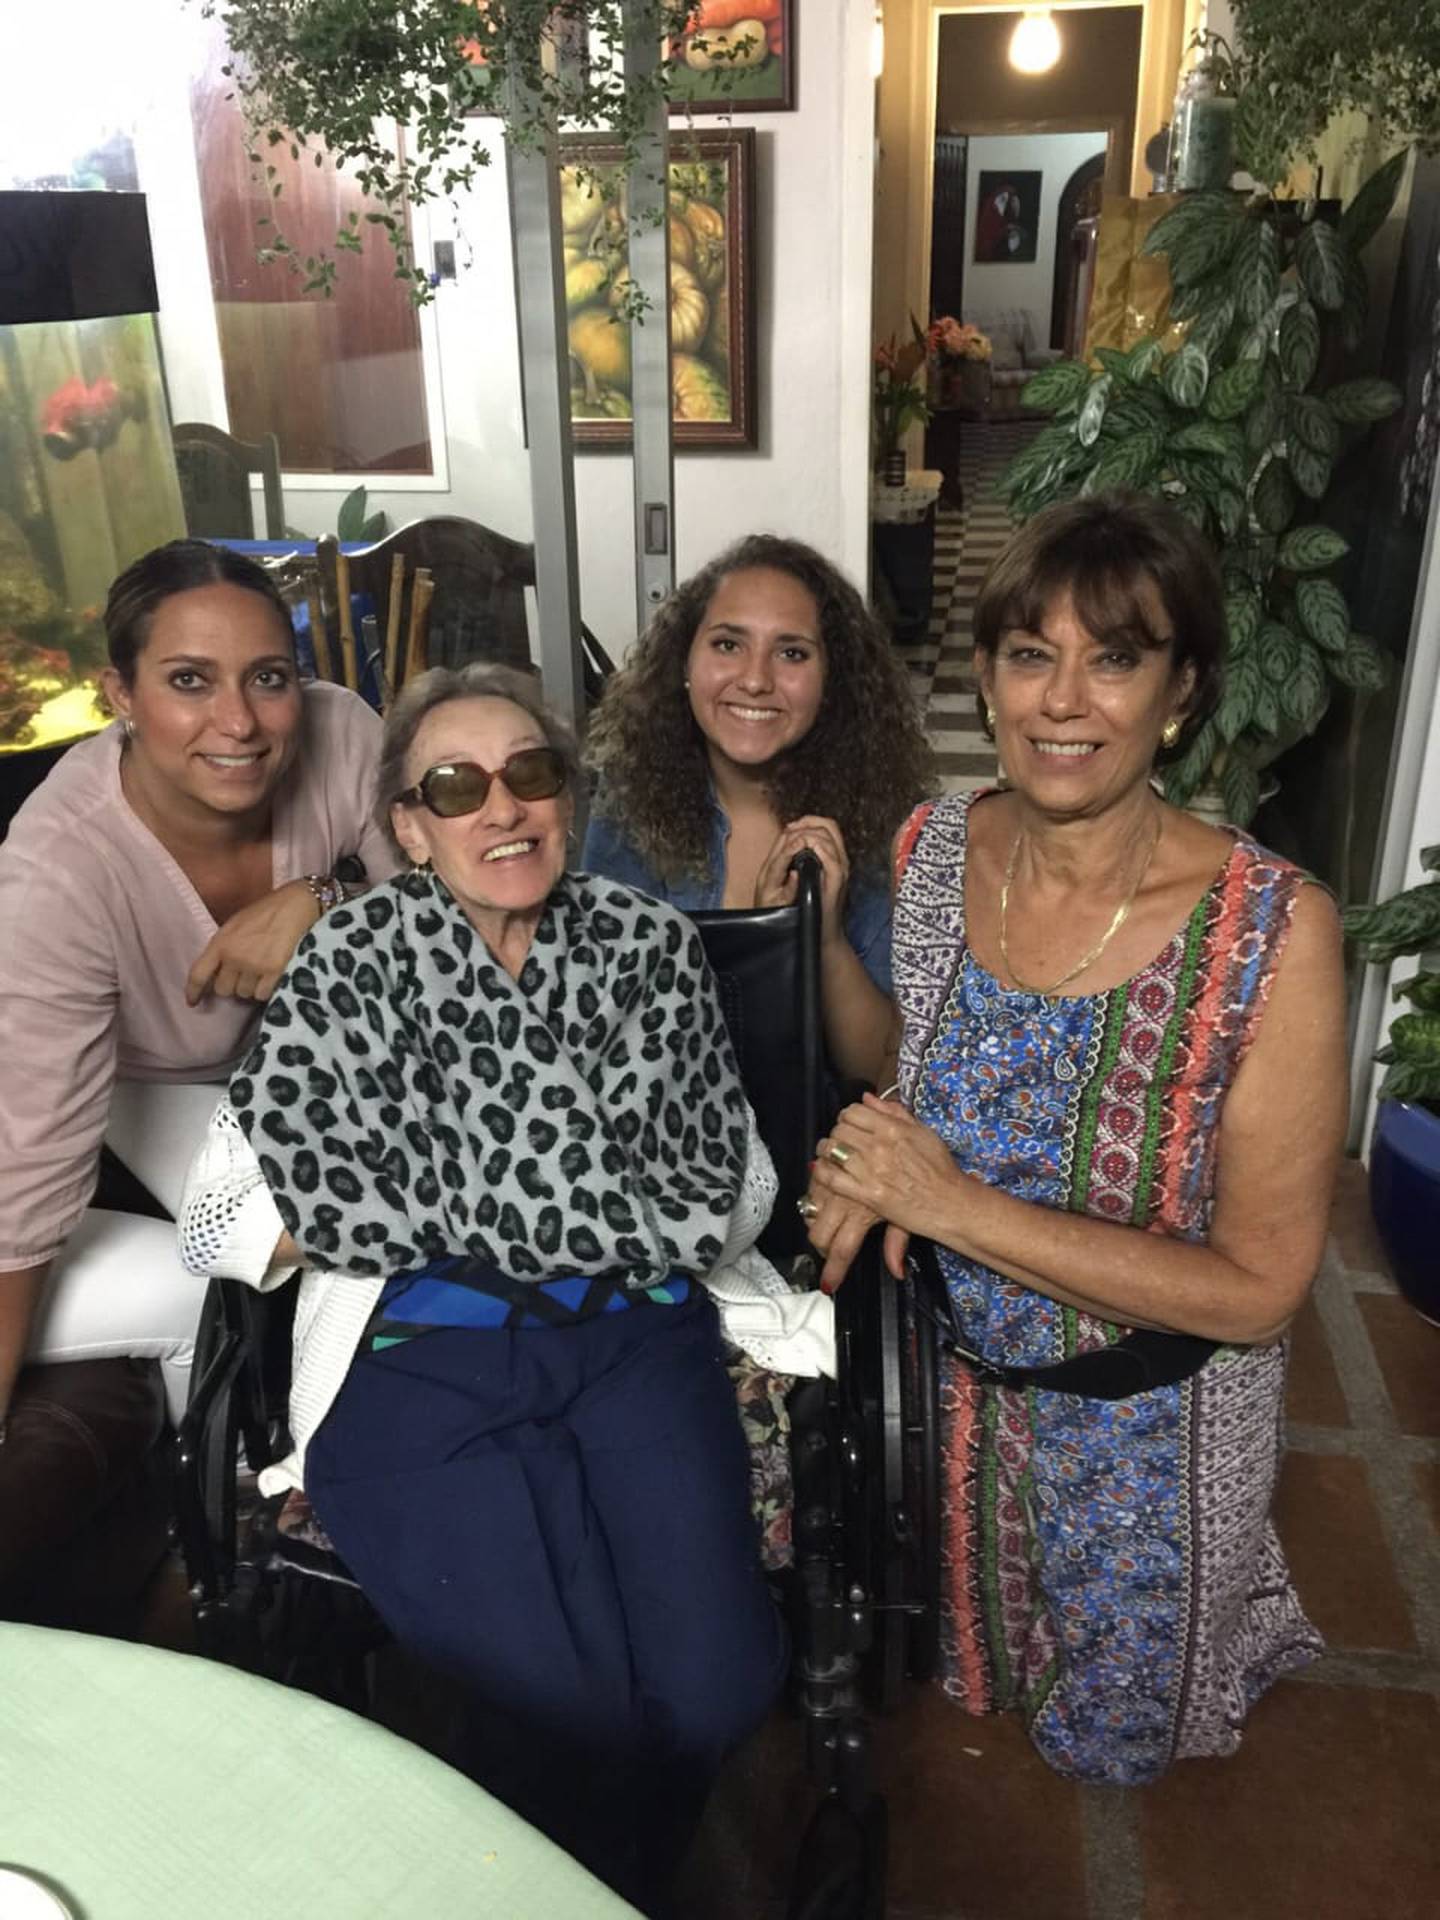 Familia de San Pablo de Heredia tiene guarias moradas de más de 100 años. En la foto de izquierda a derecha: Sofía Lobo, doña Delfina Hernández, Fabianna y Ana Victoria León.